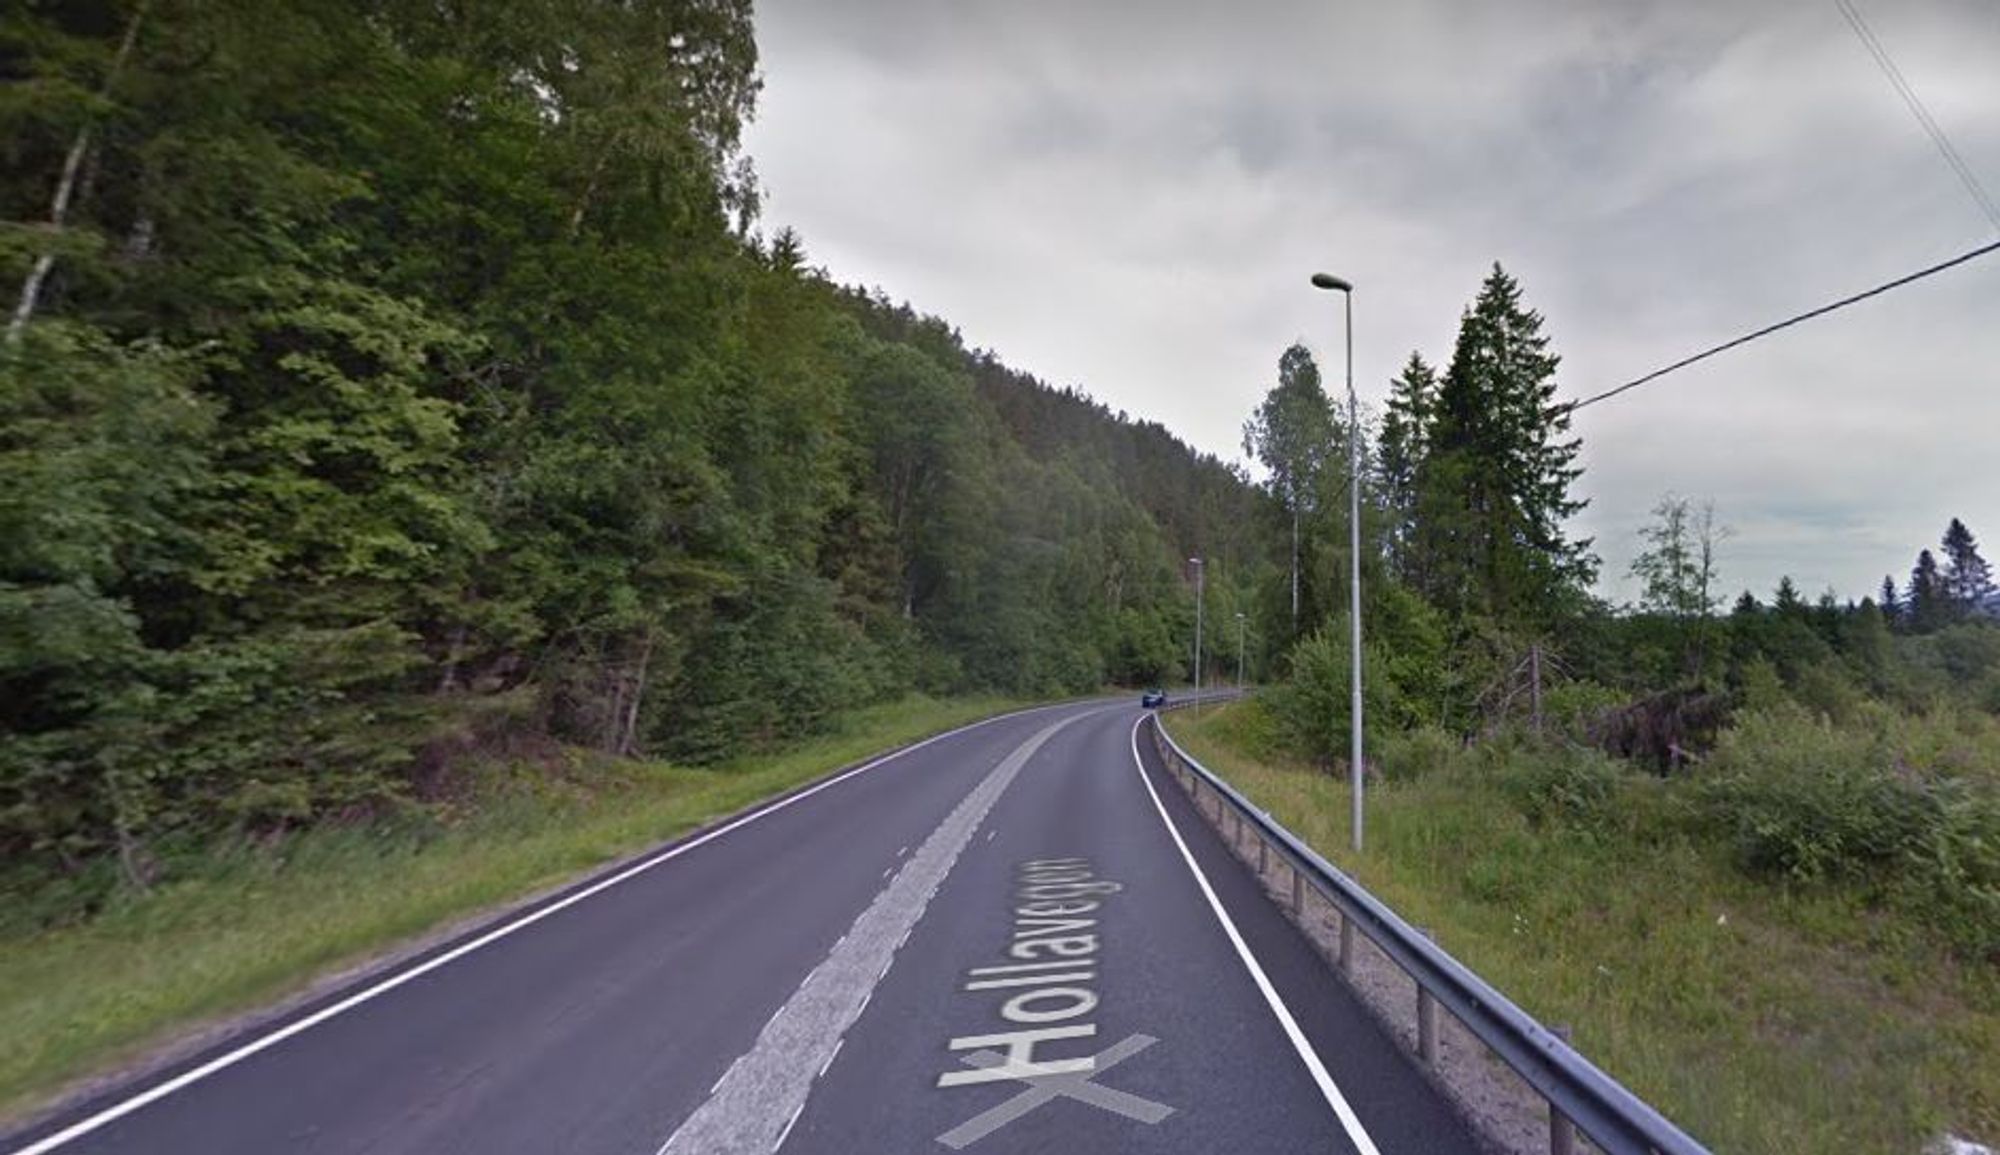 Veibelysningen på riksvei 36 på vestsiden av Norsjø inngår i kontrakten.